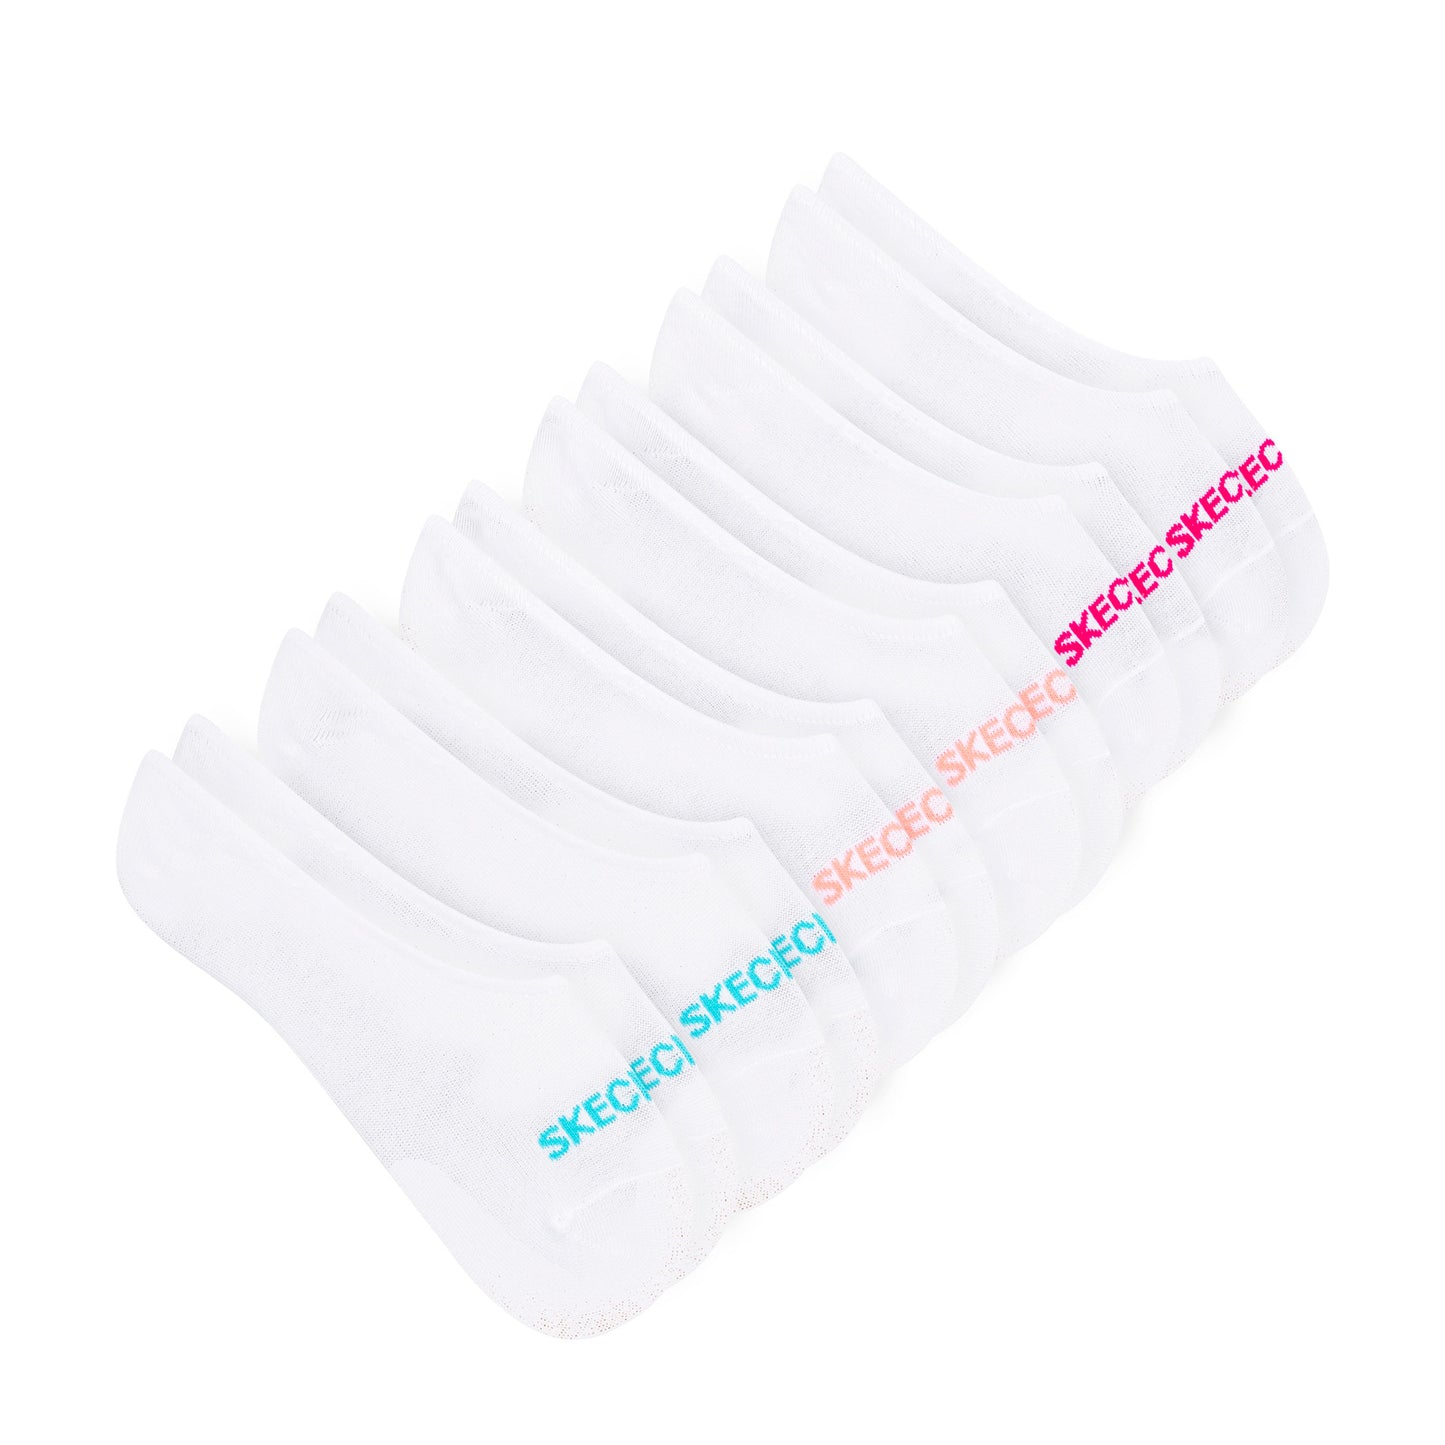 Peltz Shoes  Women’s Skechers Liner Socks – 6 Pair White Multi S117840-114